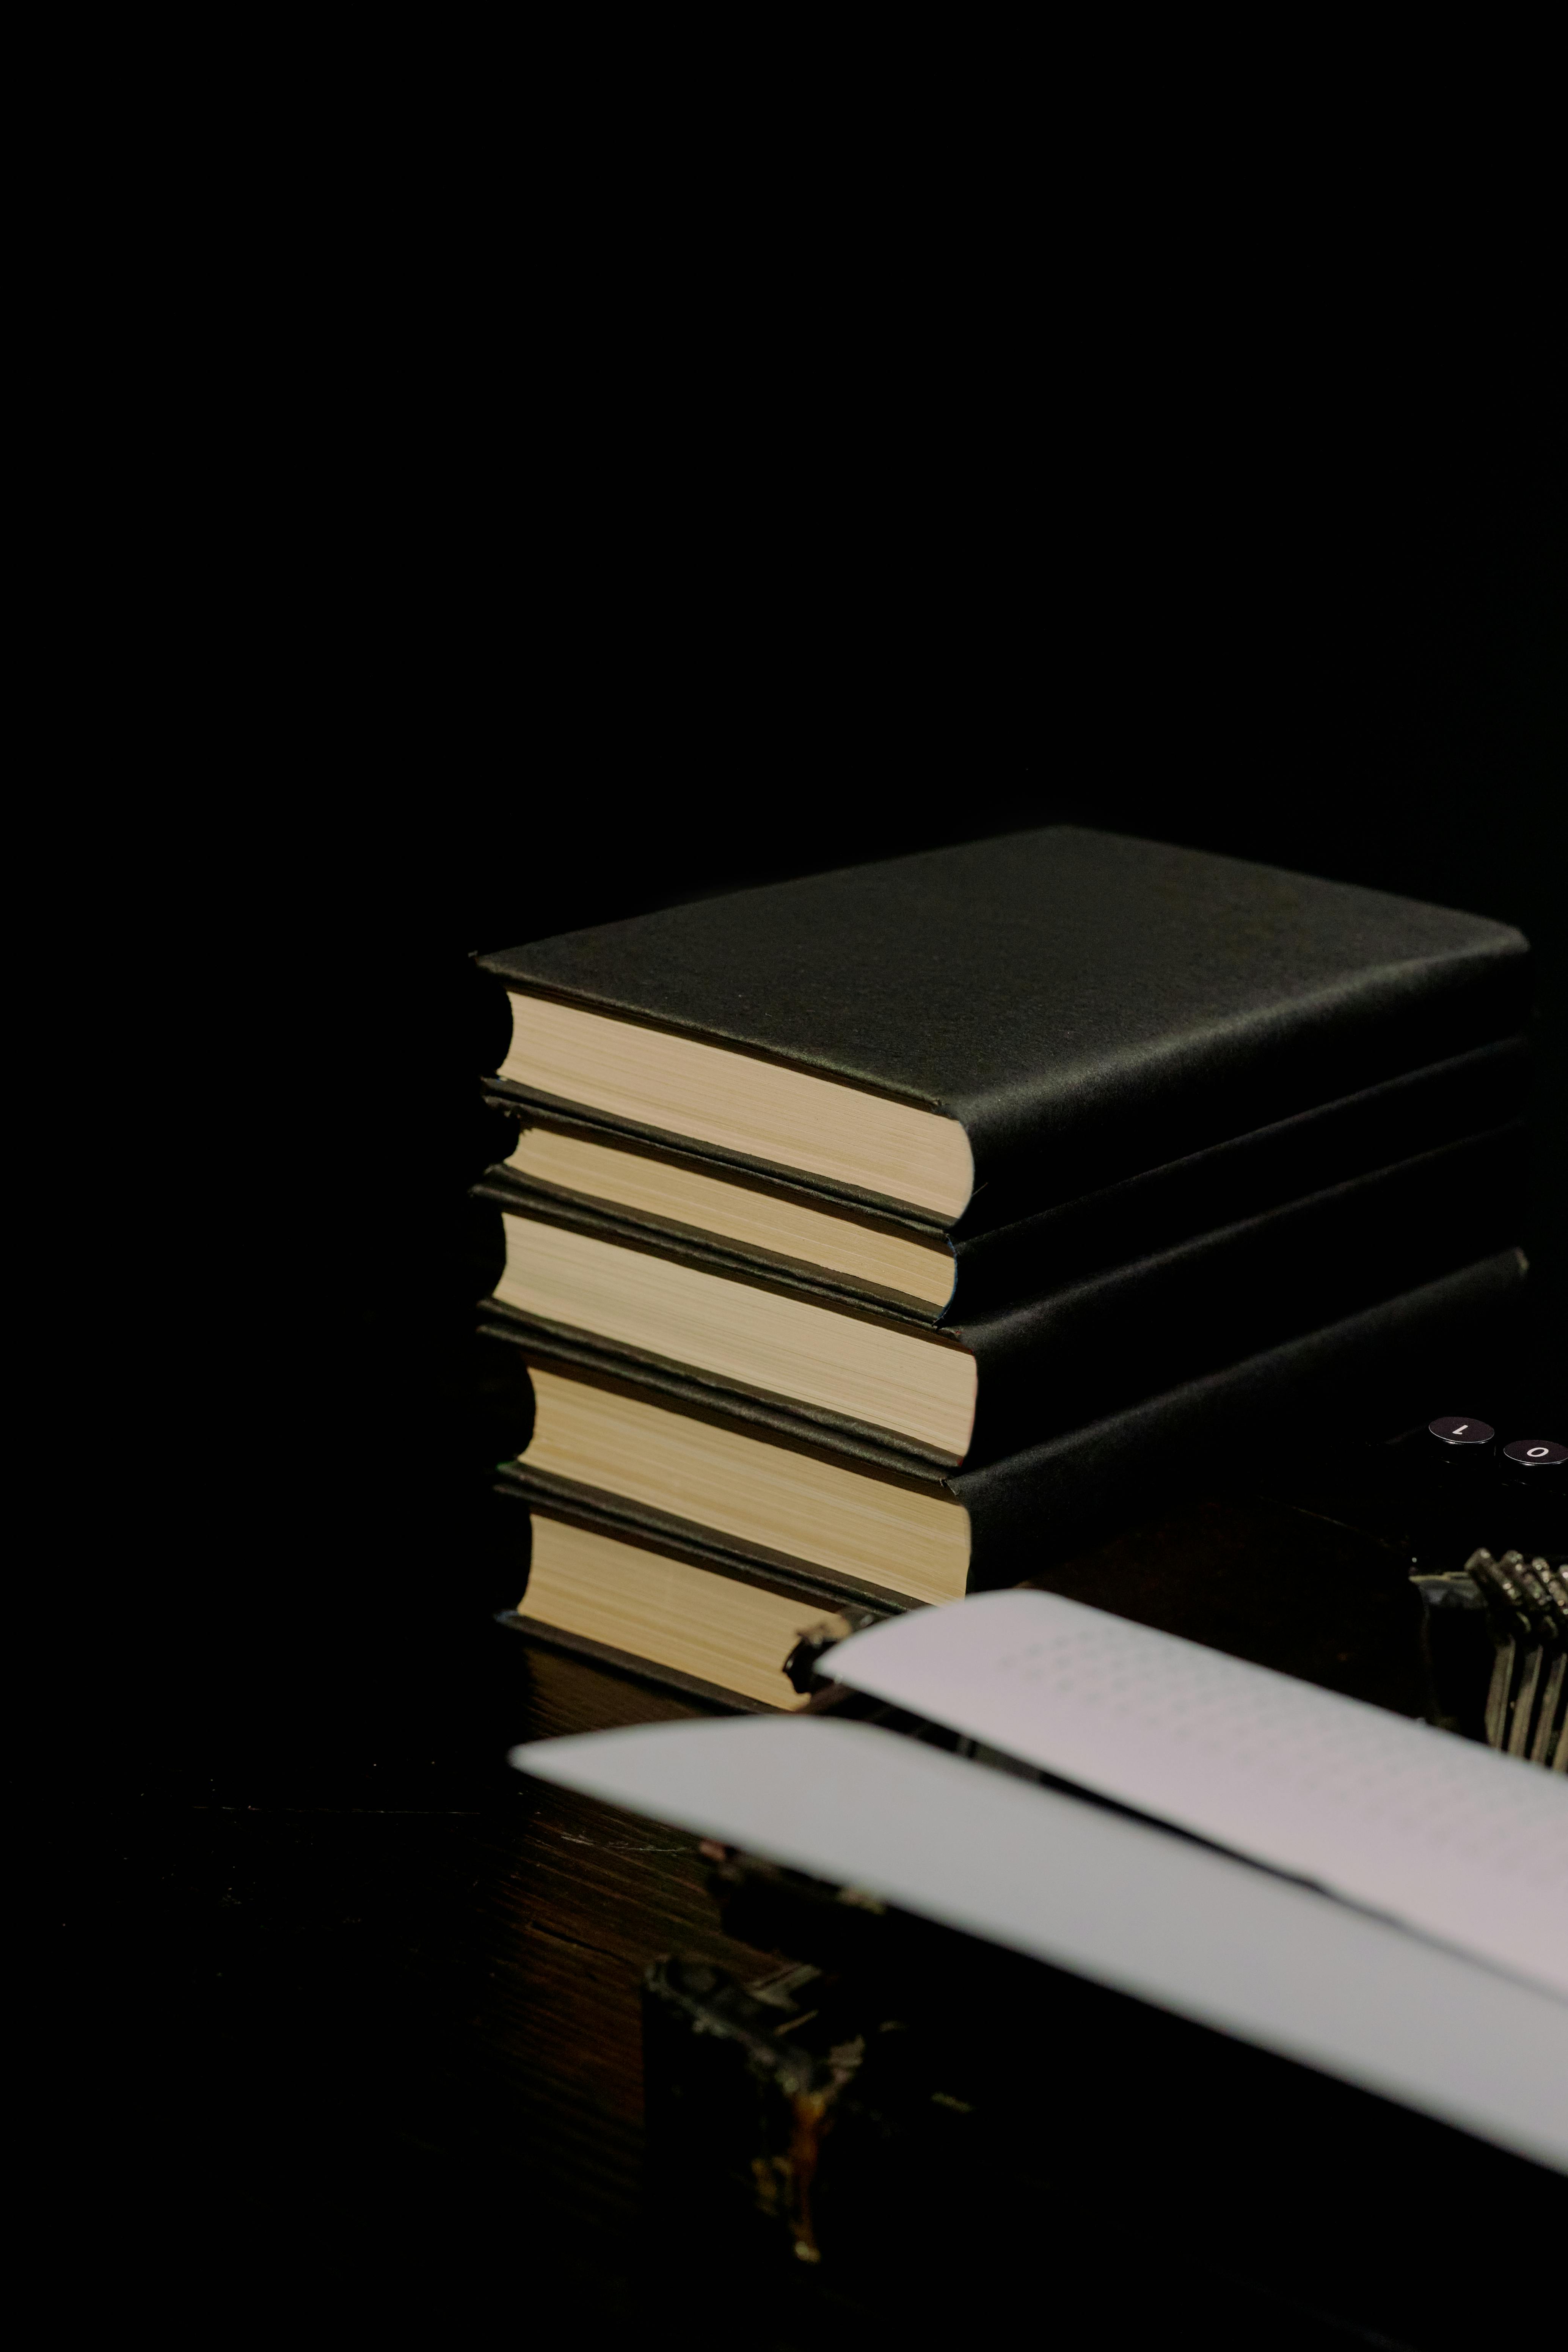 Sách đen bìa cứng trên bàn đen mang lại không gian tràn đầy sức sống và sự nghiêm túc. Hãy chiêm ngưỡng những tác phẩm văn học đình đám với người bạn đồng hành cổ điển này. Vừa trang trí nhà, vừa nâng cao kiến thức, còn gì tuyệt vời hơn? 